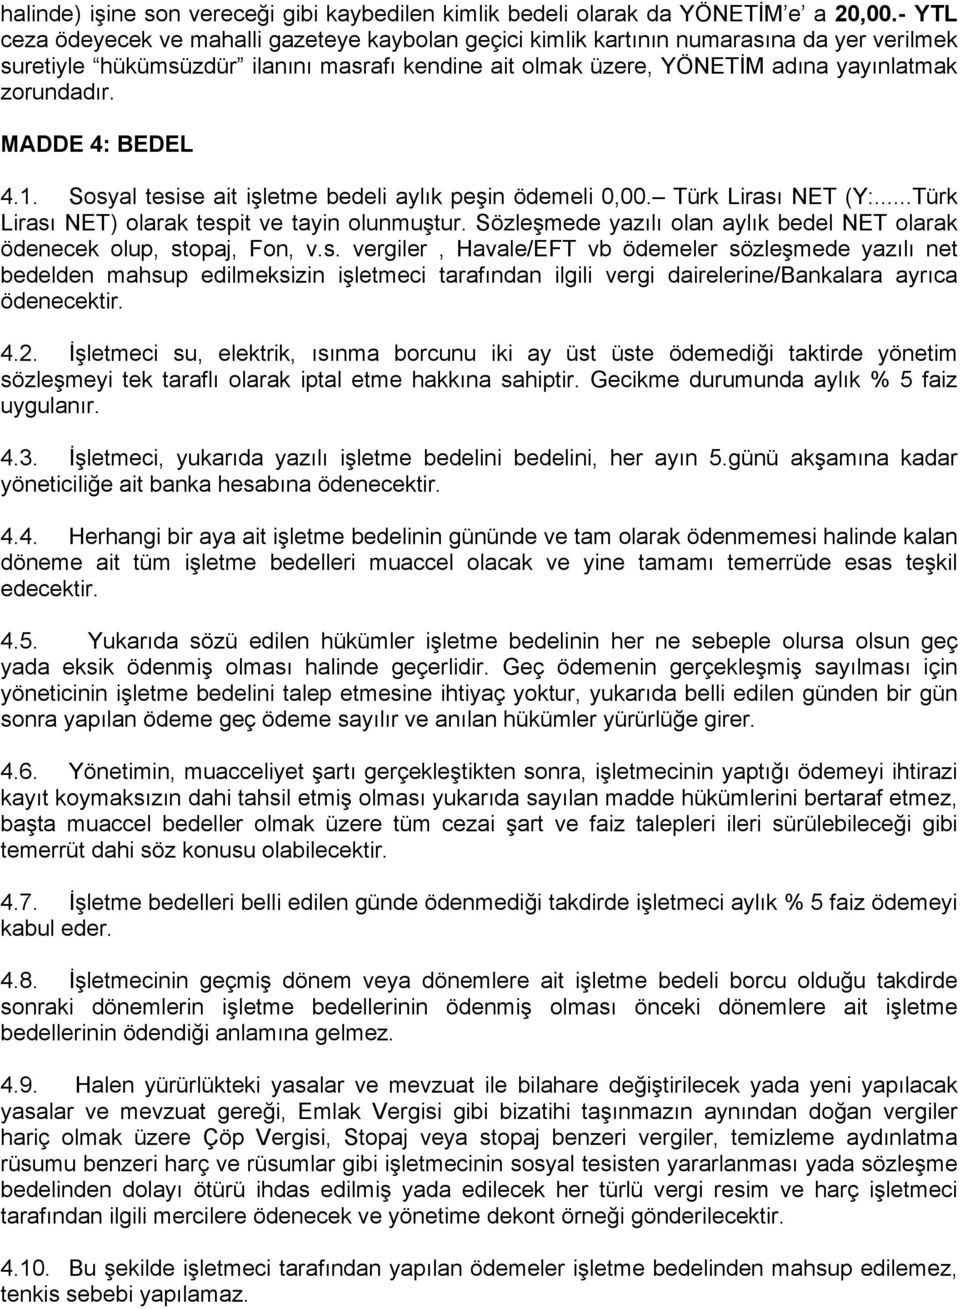 MADDE 4: BEDEL 4.1. Sosyal tesise ait işletme bedeli aylık peşin ödemeli 0,00. Türk Lirası NET (Y:...Türk Lirası NET) olarak tespit ve tayin olunmuştur.